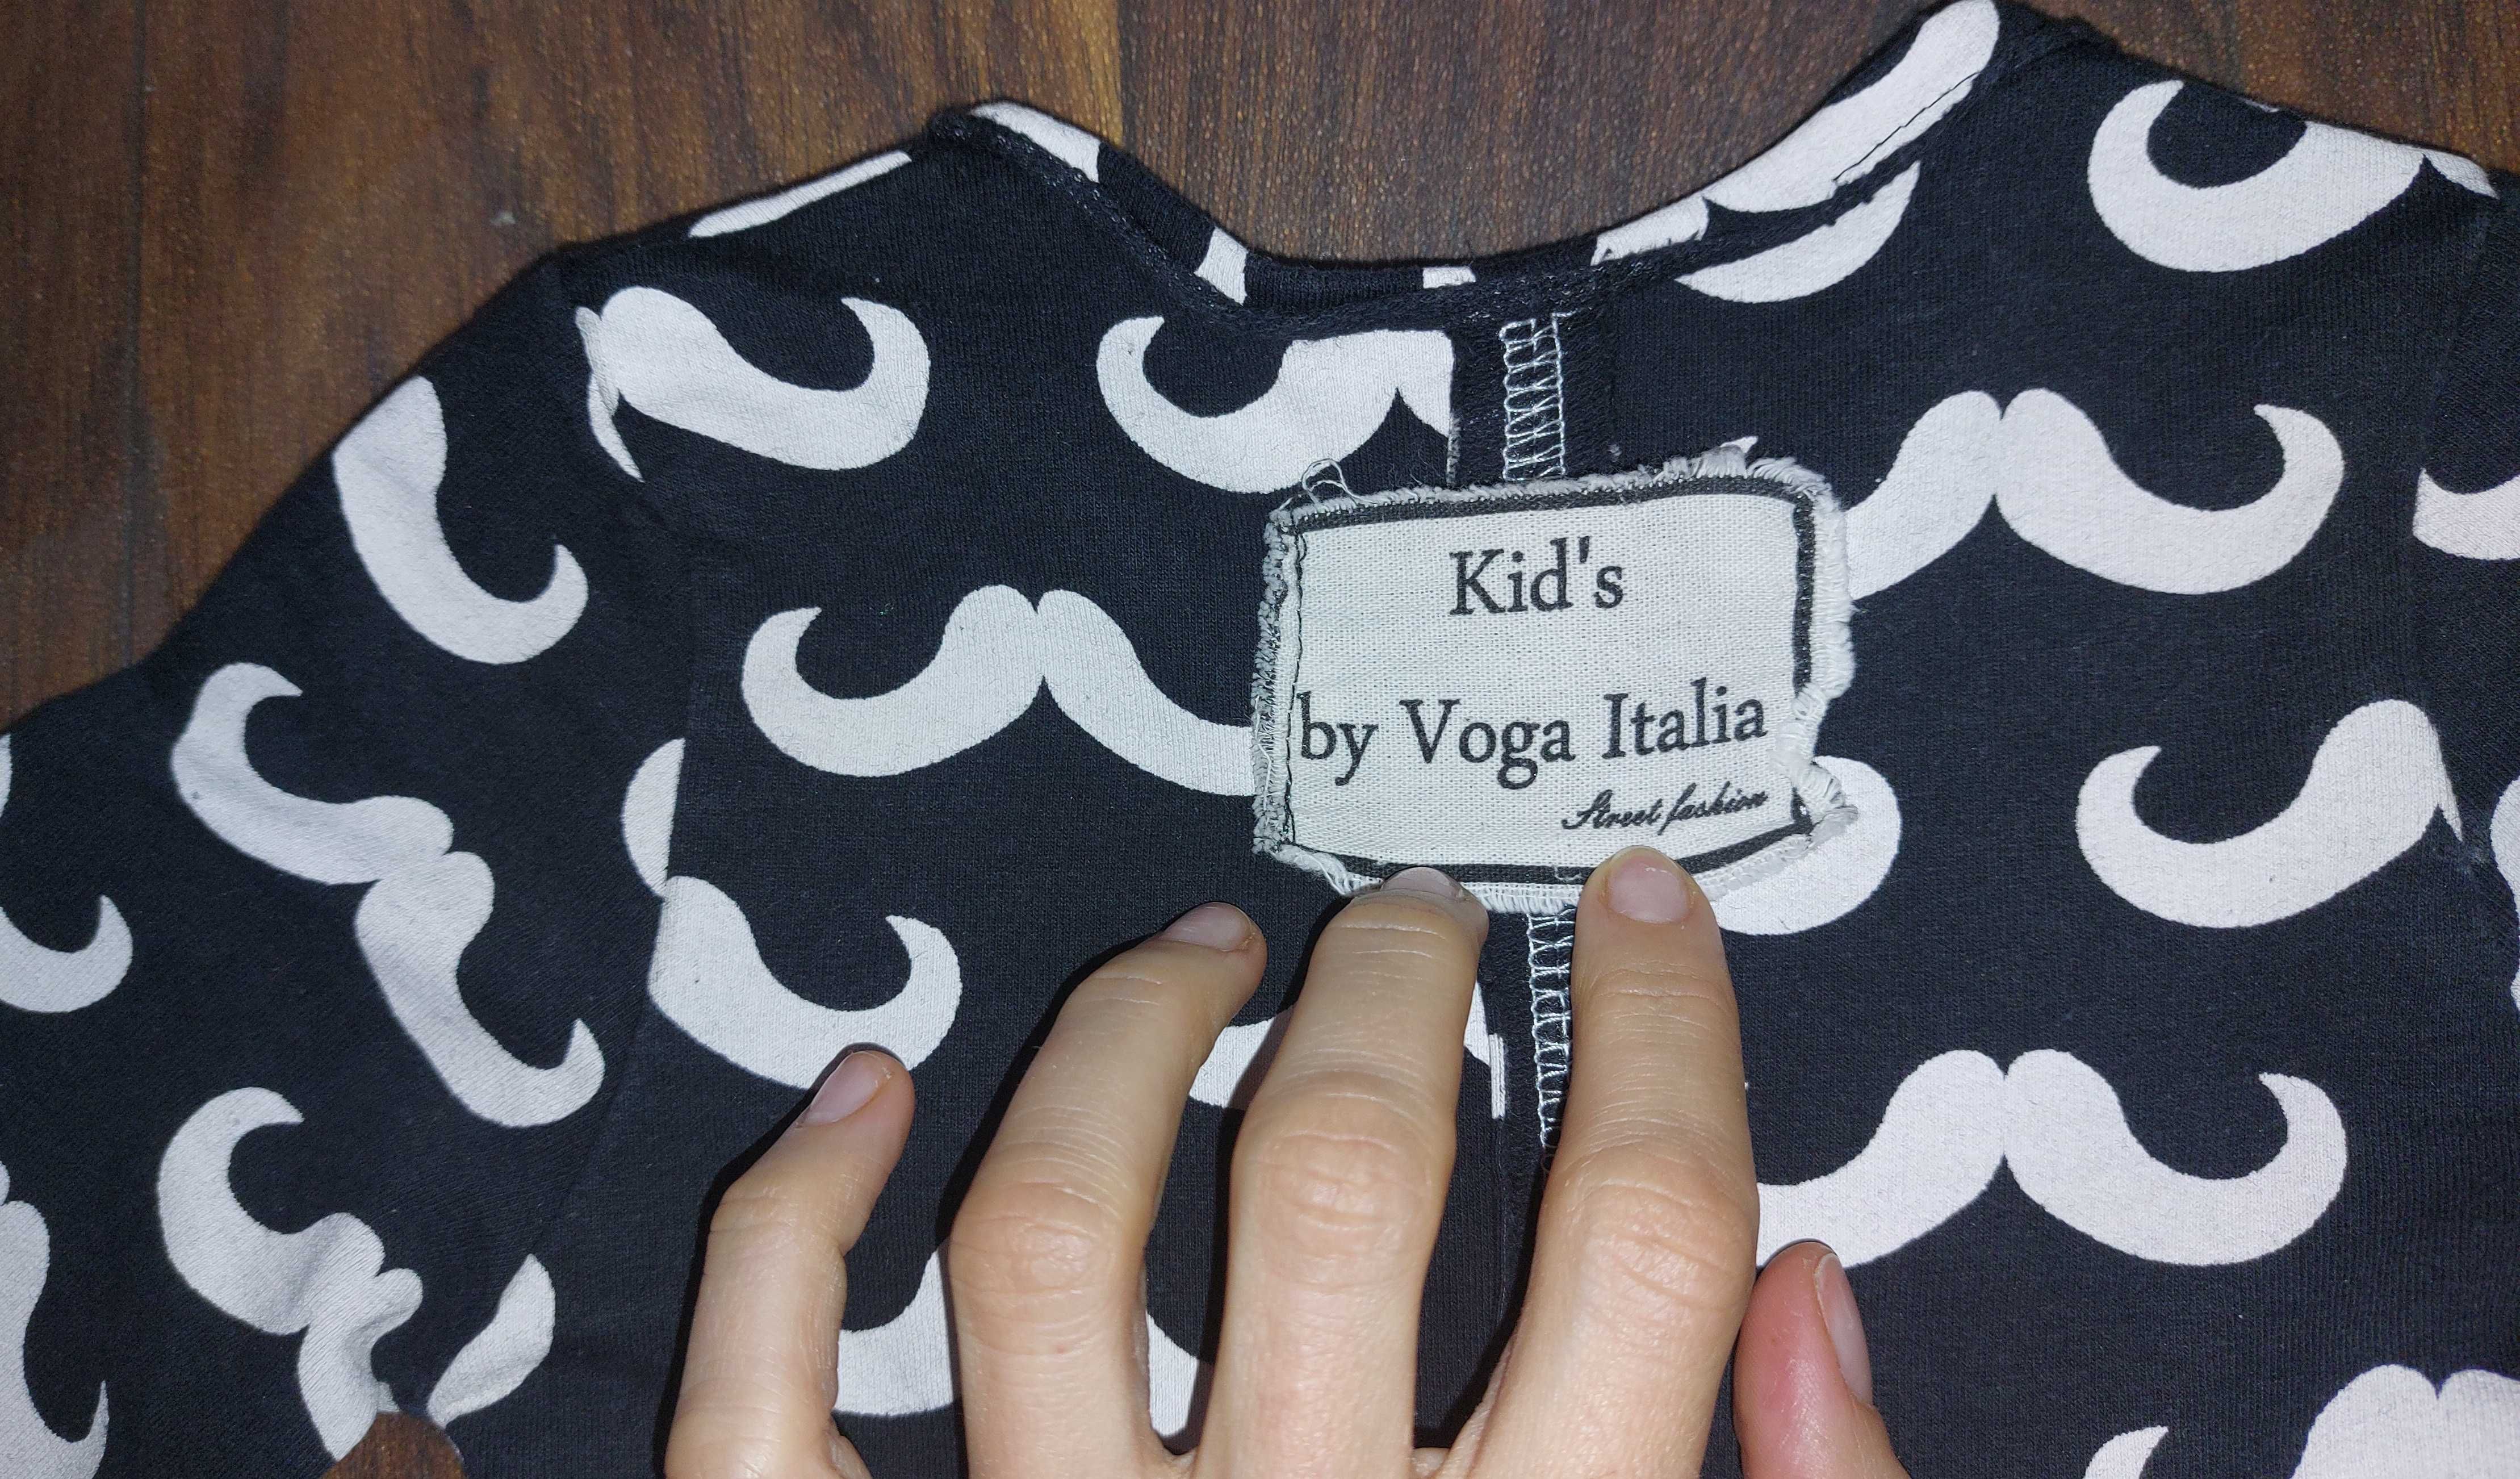 Kid's by Voga Italia, Sukienka, czarna w białe wąsy, rozmiar 86/92